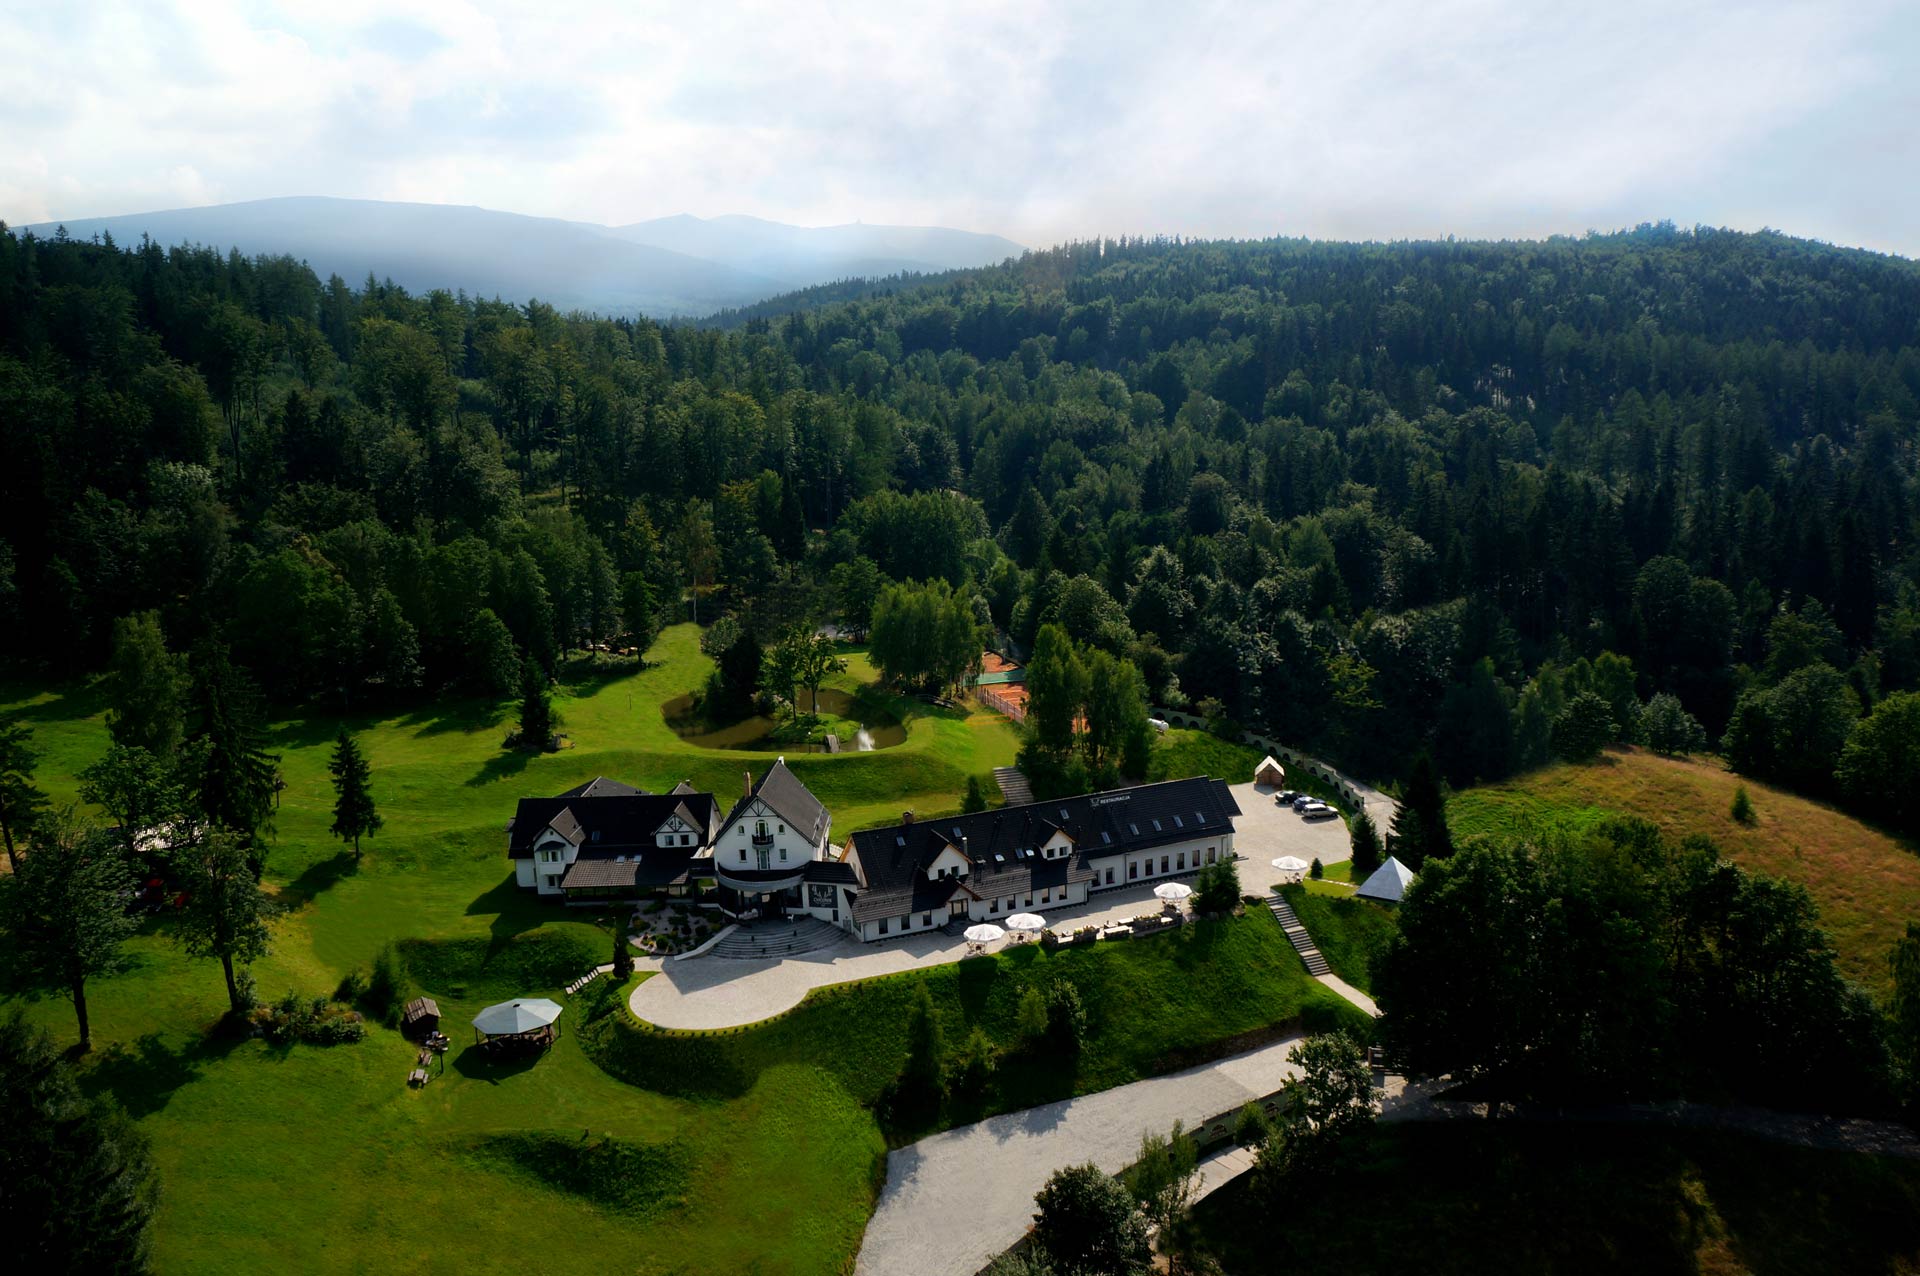 Hotel w górach Karkonosze pokoje noclegi restauracja Sudety Polska